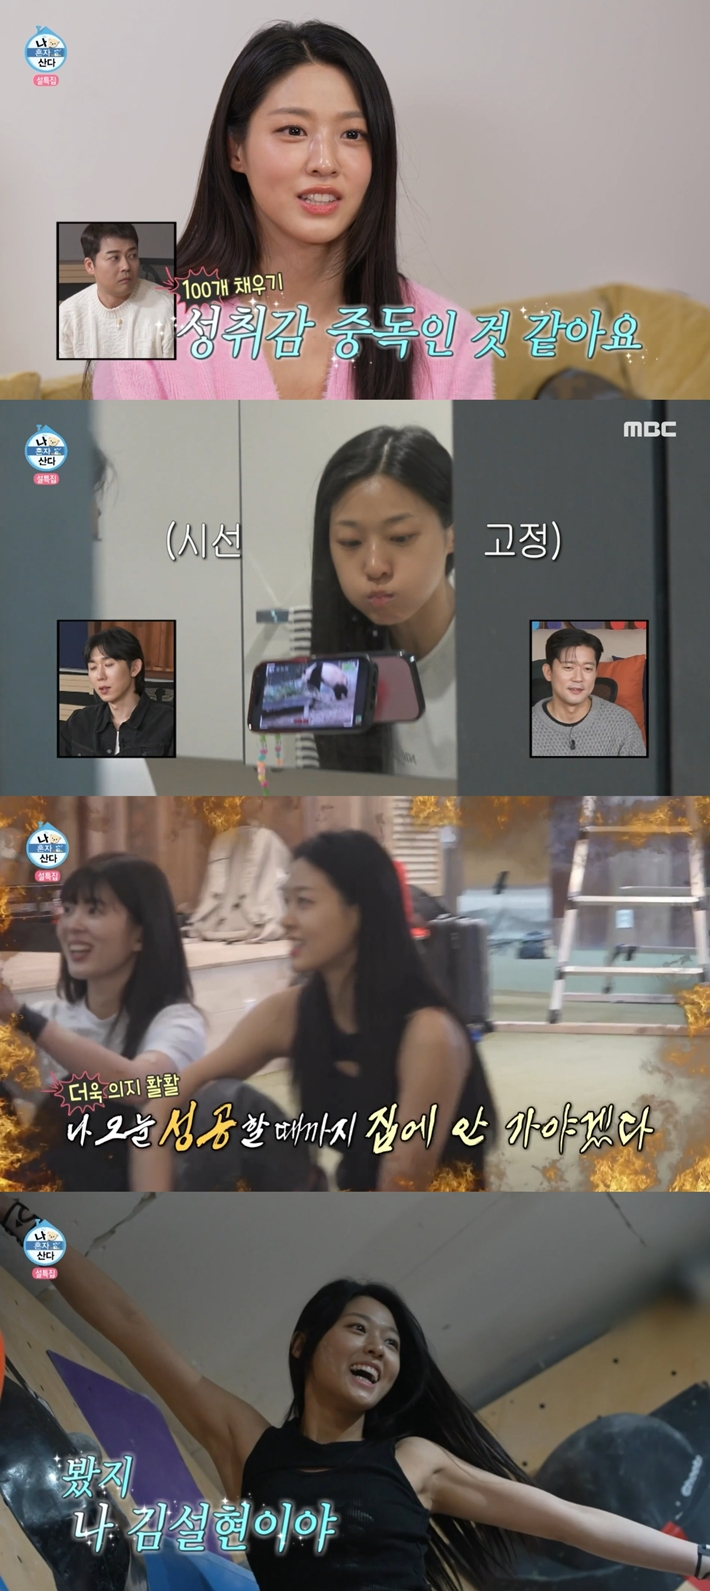 9일 방송한 MBC '나 혼자 산다'에는 가수 겸 배우 설현이 출연했다. '나 혼자 산다' 캡처